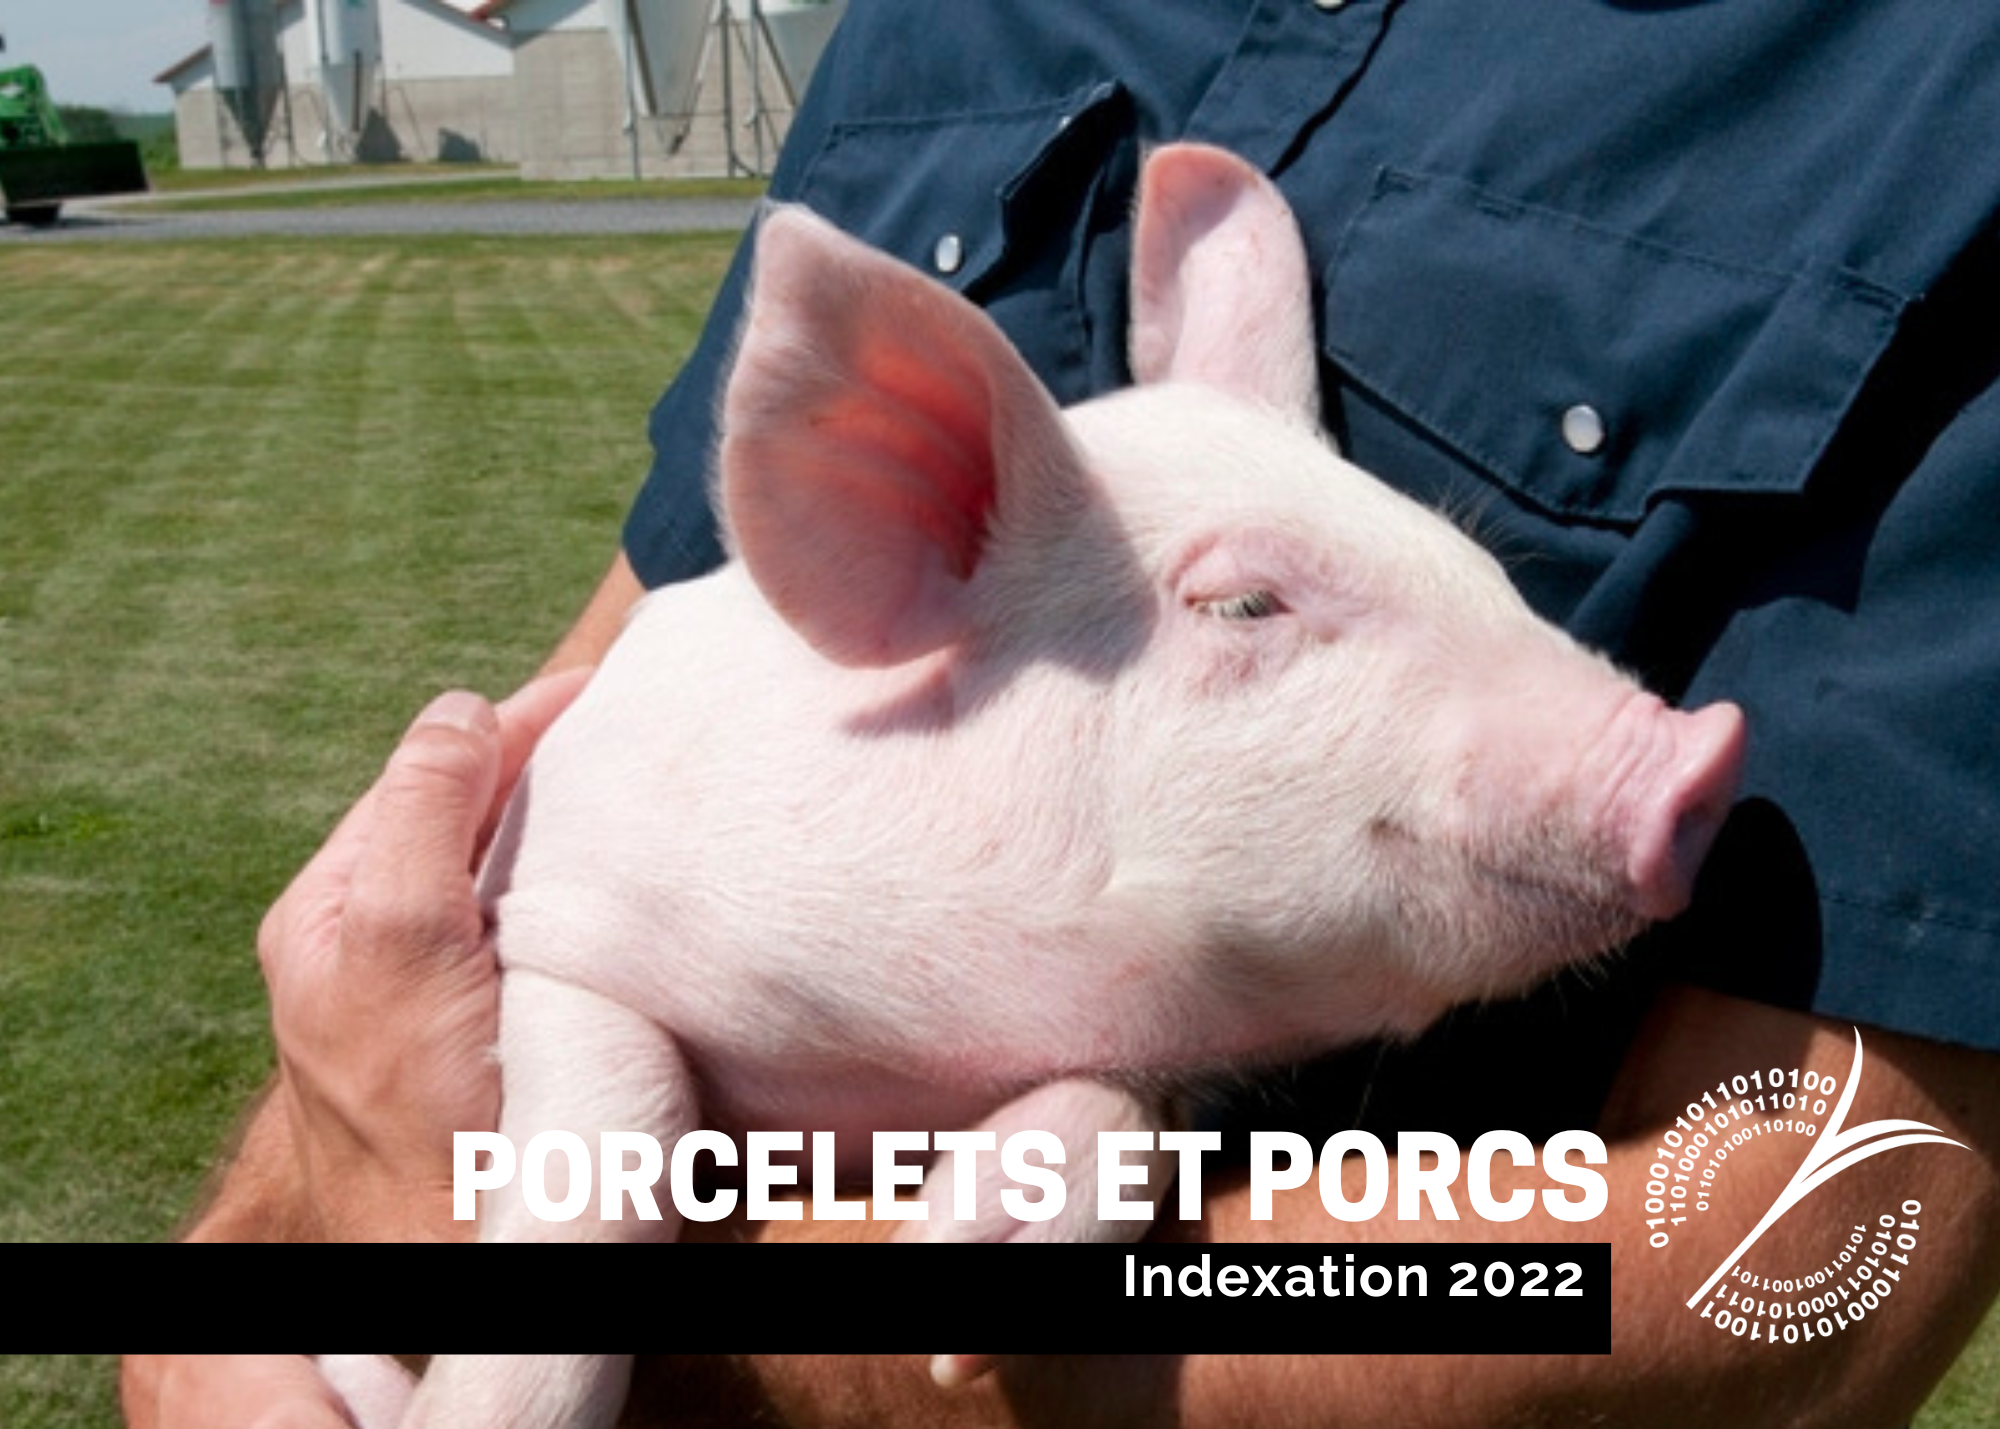 étude : Indexation 2022 - Porcelets et porcs